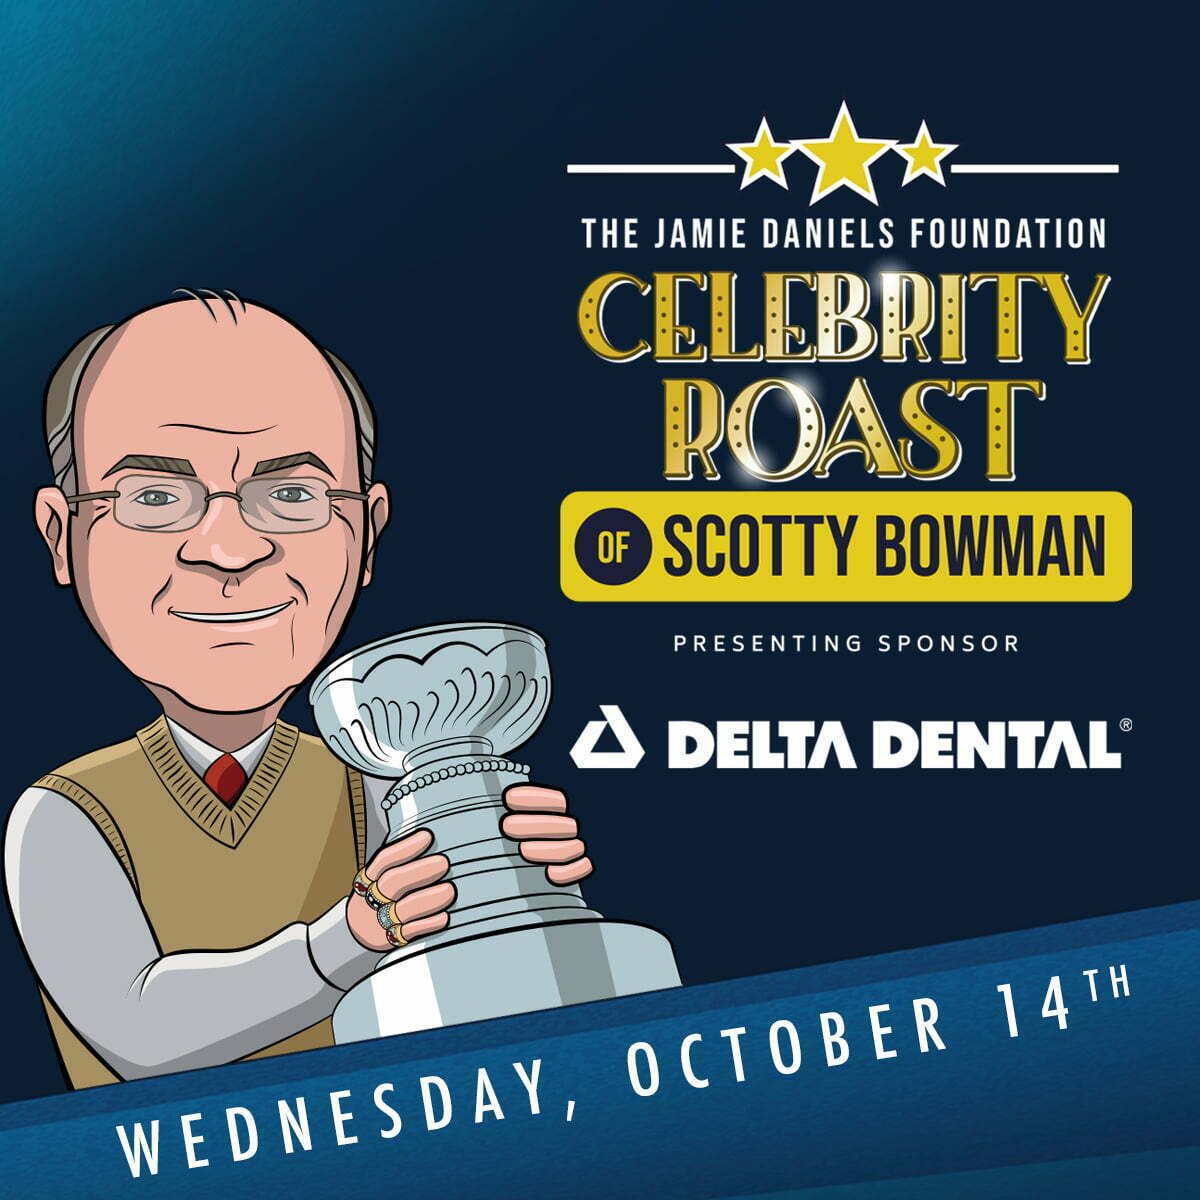 jamie daniels foundation celebrity roast of scotty bowman